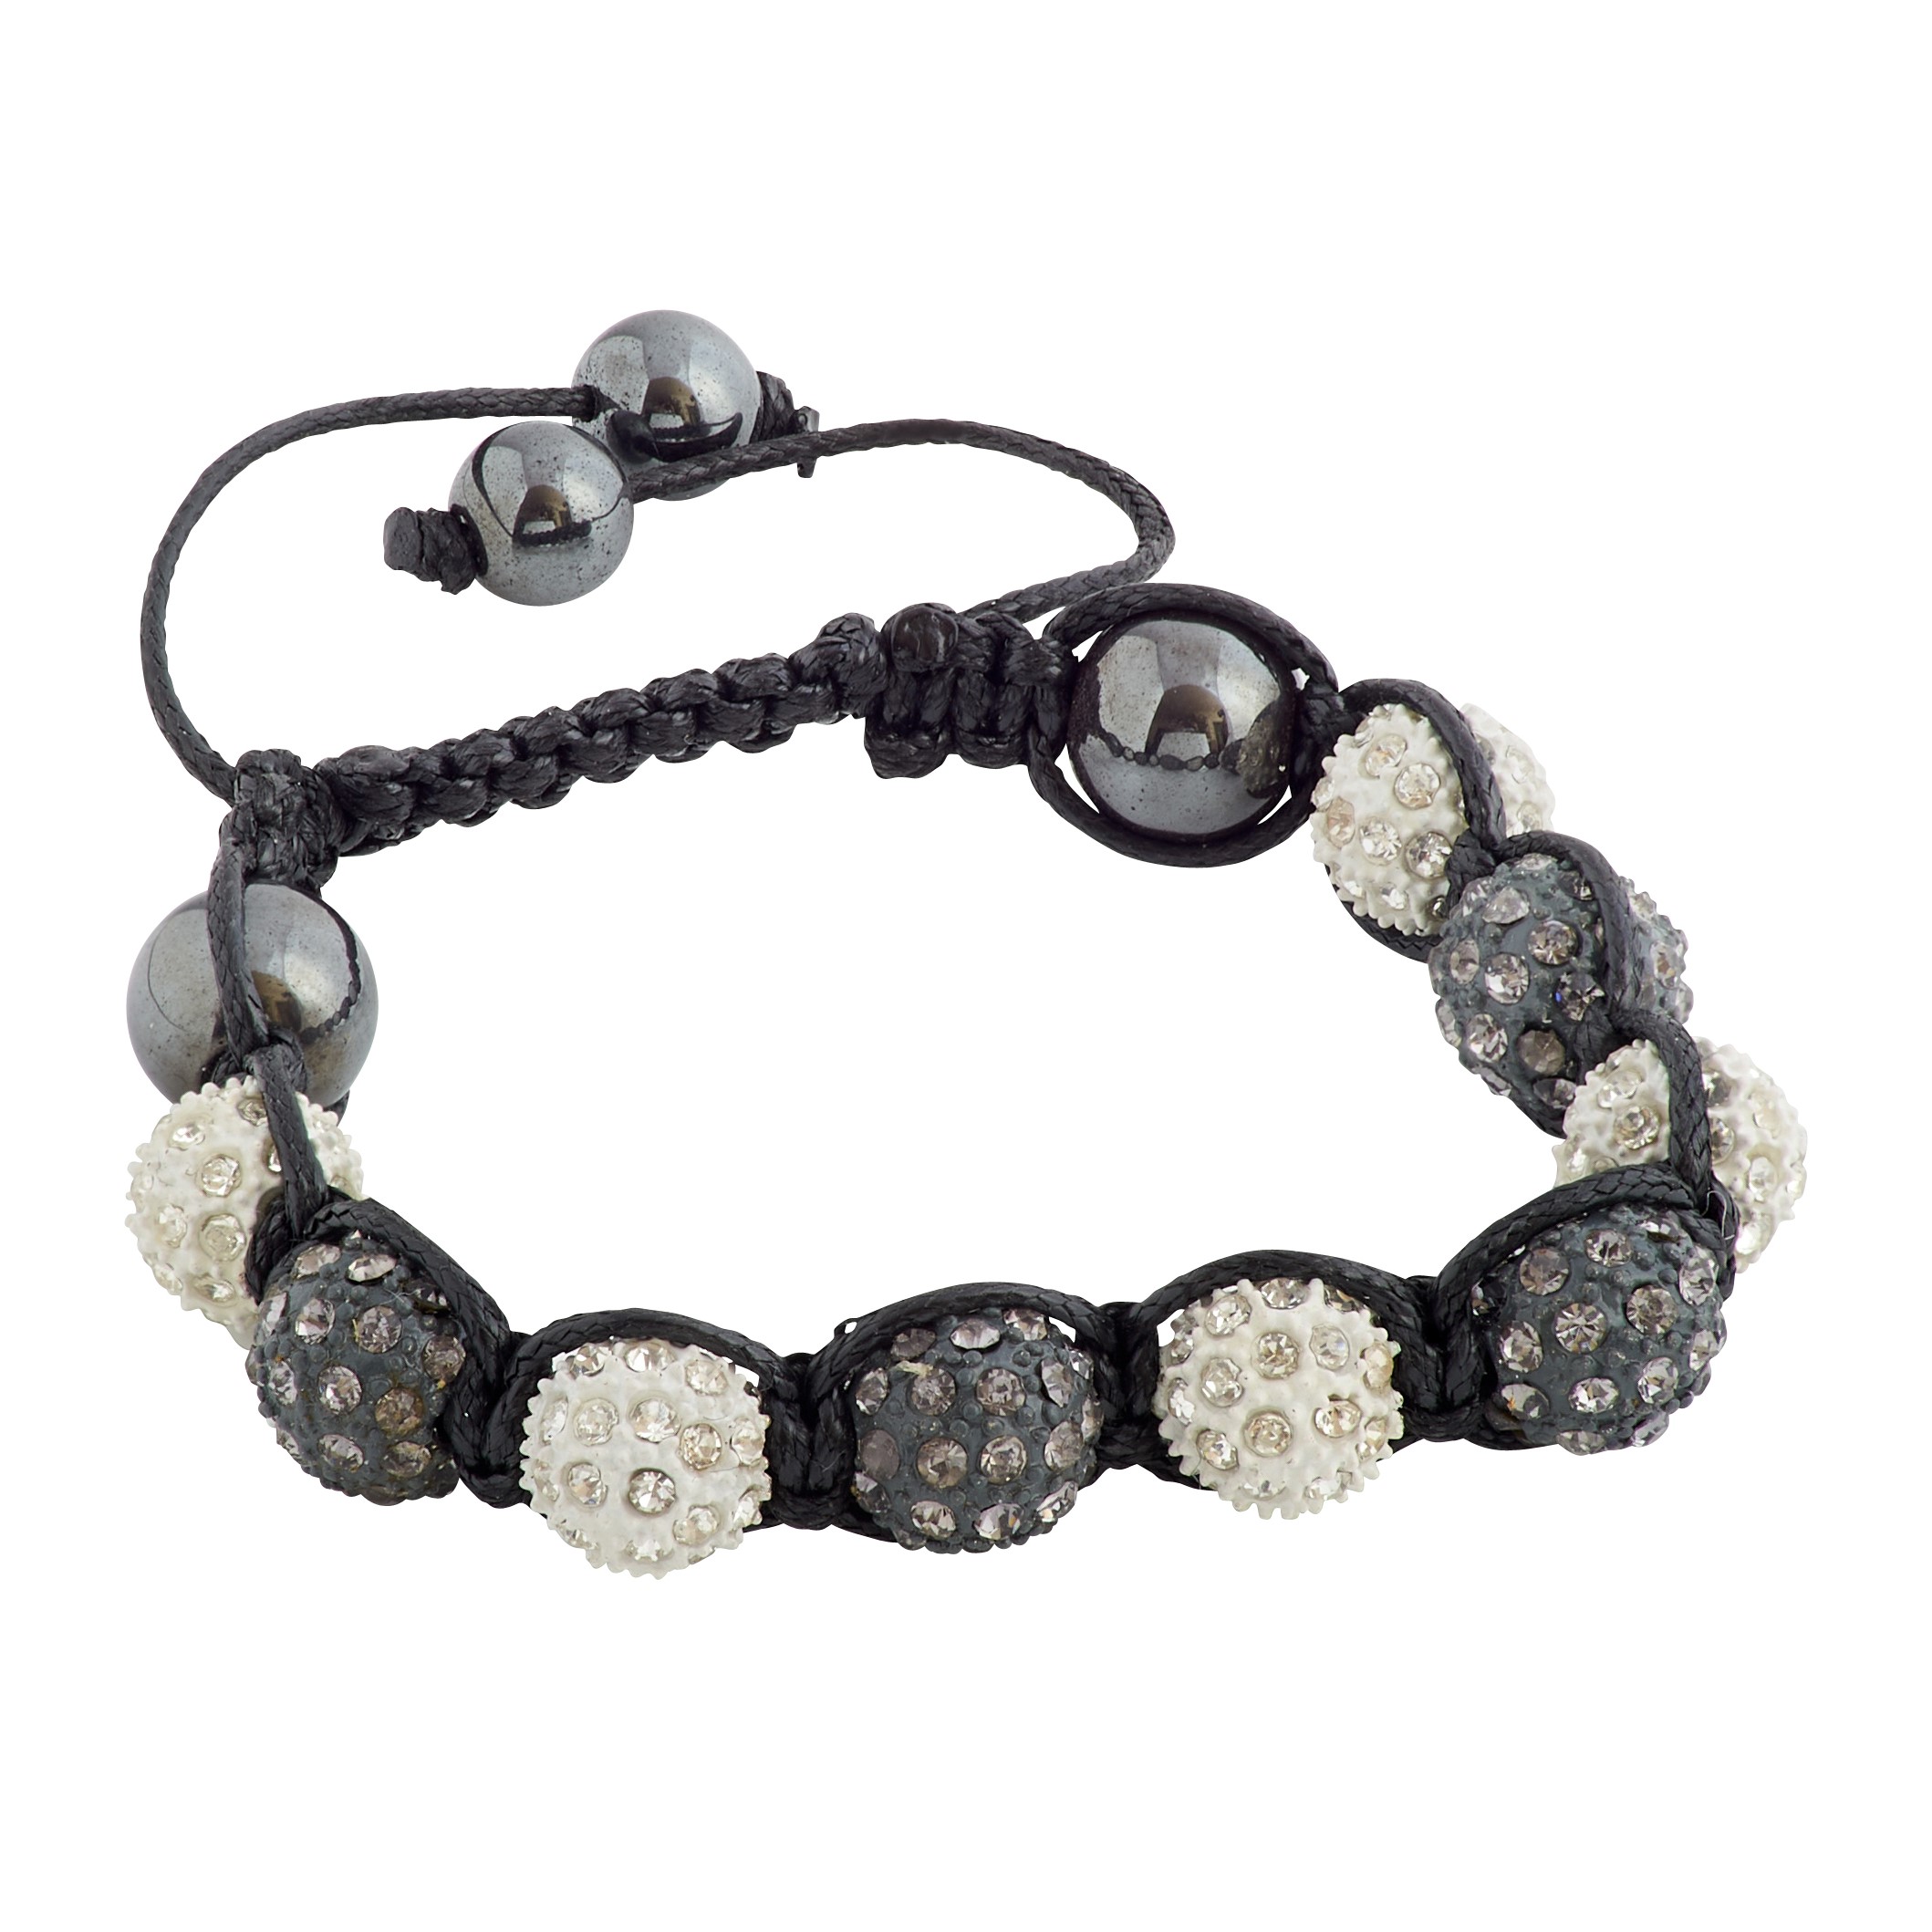 Grey and White Crystals Clay Beads Shamballa Bracelet - Ephori London -  Luxury custom natural stone beaded bracelets